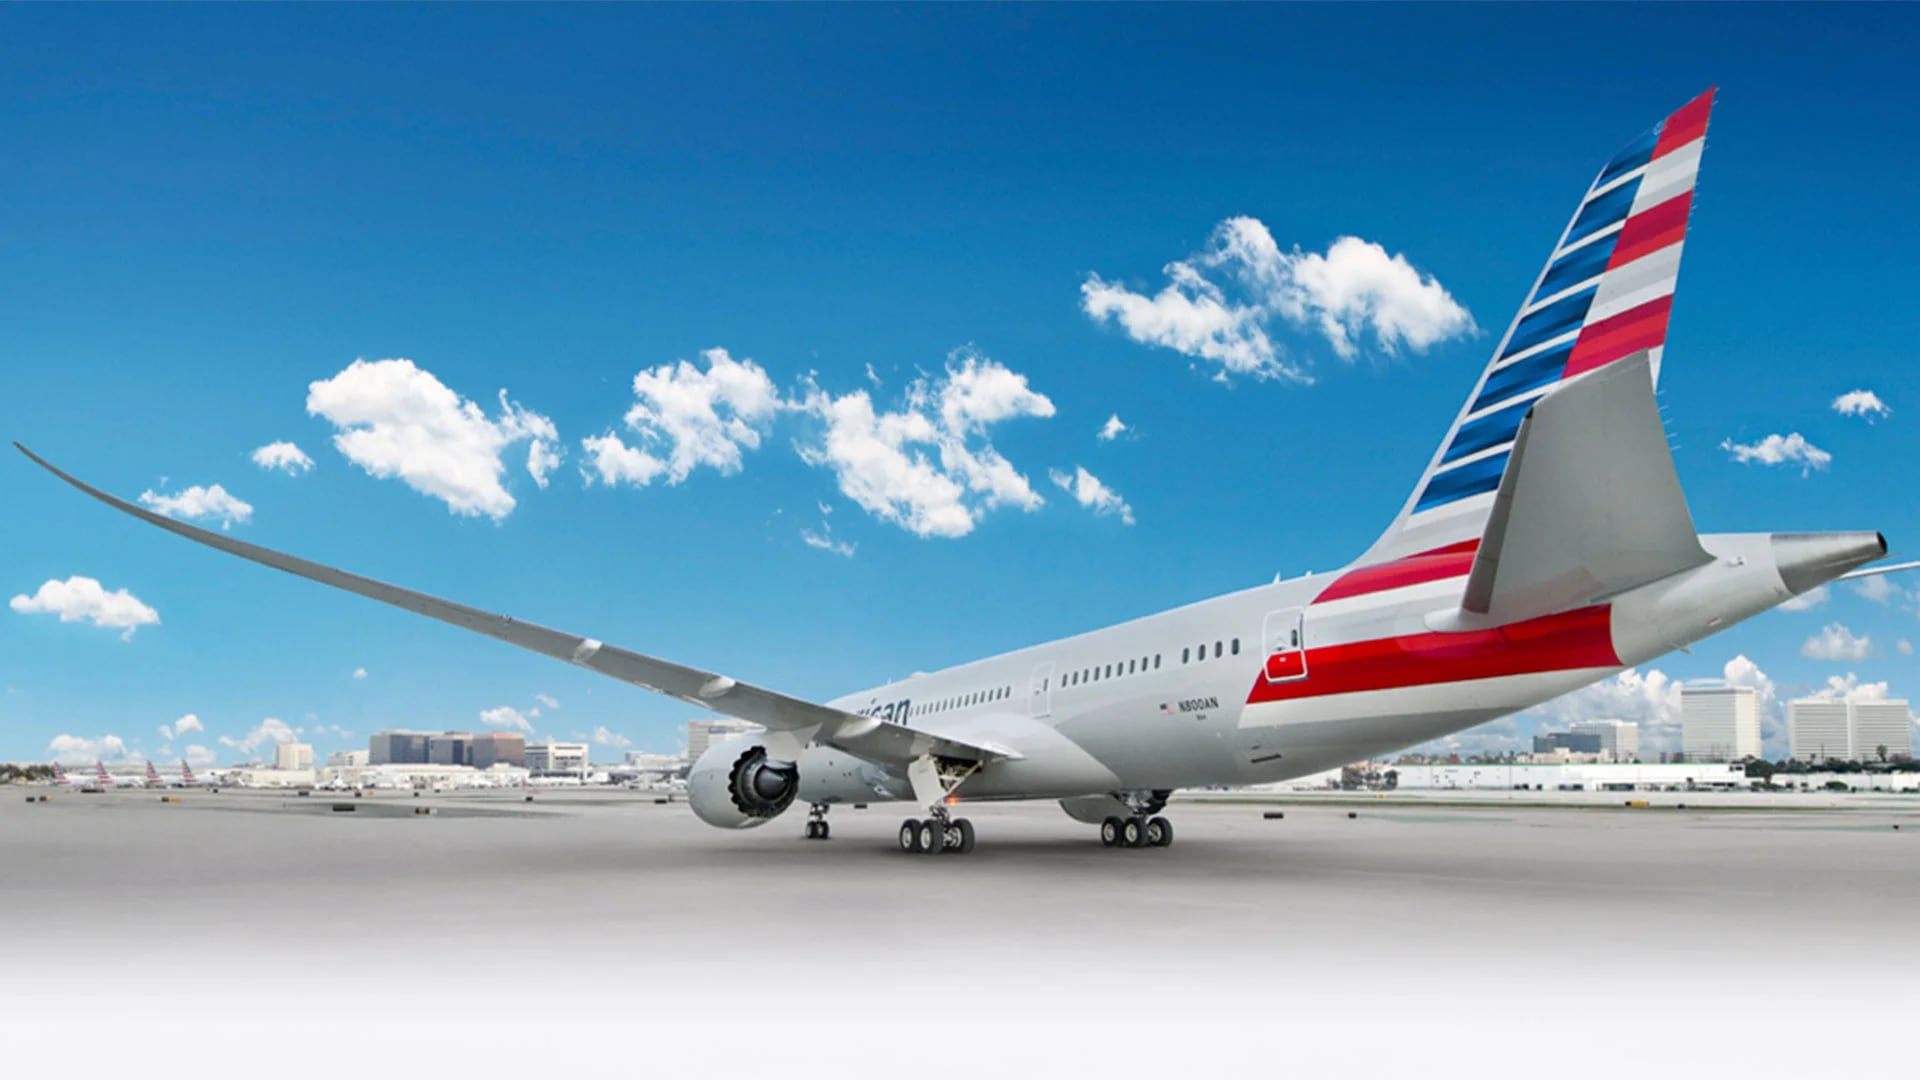 Aumentan las rutas desde el Aeropuerto de Miami: habrá nuevos vuelos al Oeste y al Caribe